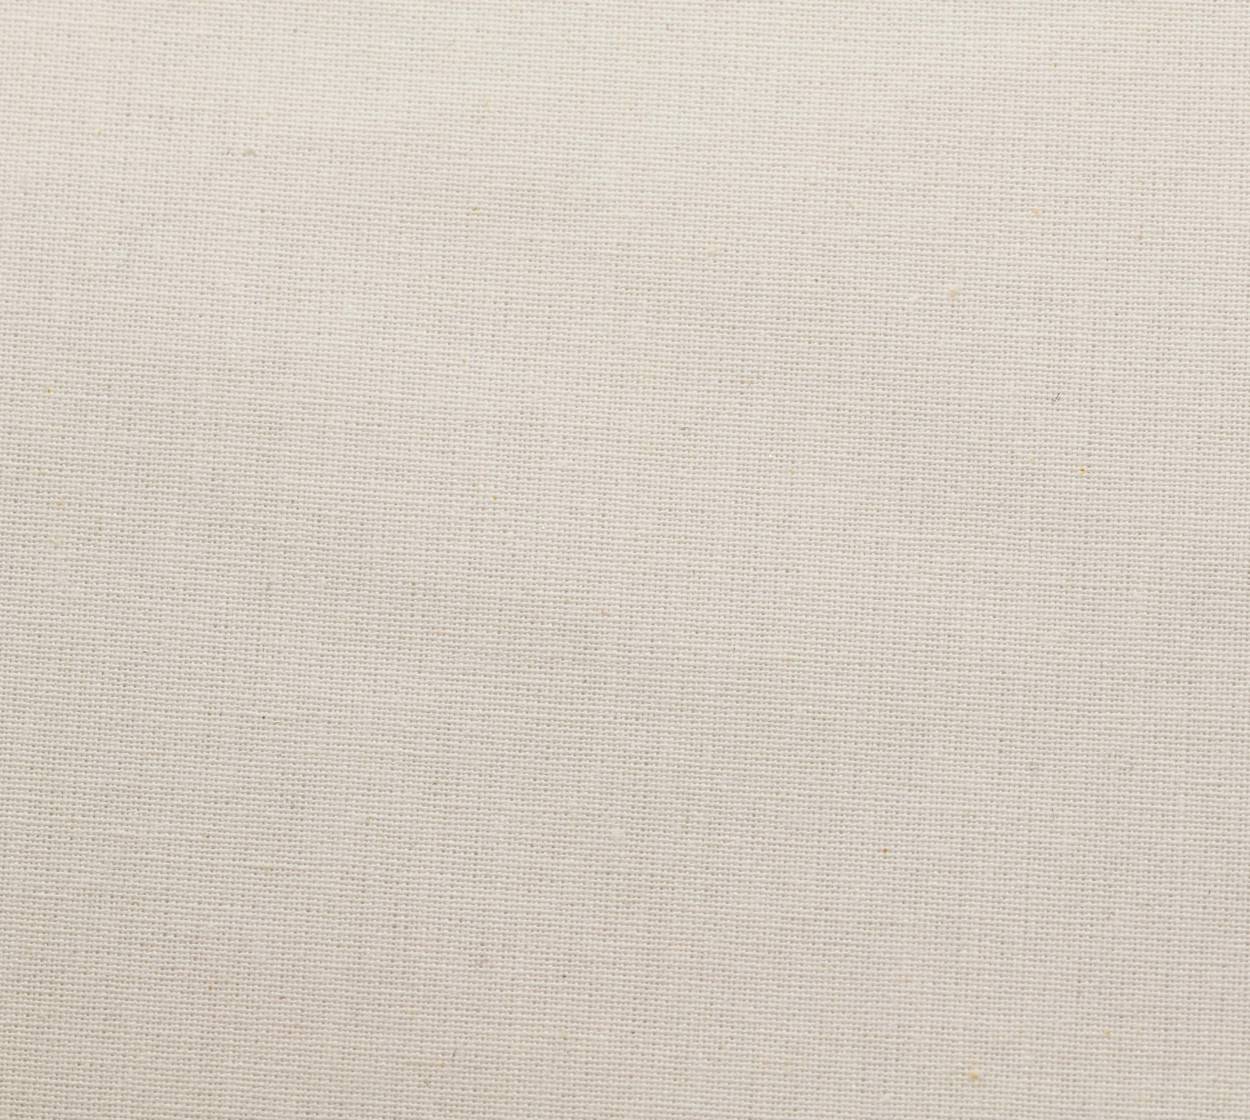 Nessel Baumwolle, weiß, 5,20 m breit, 6N15 im Stamm online Store München